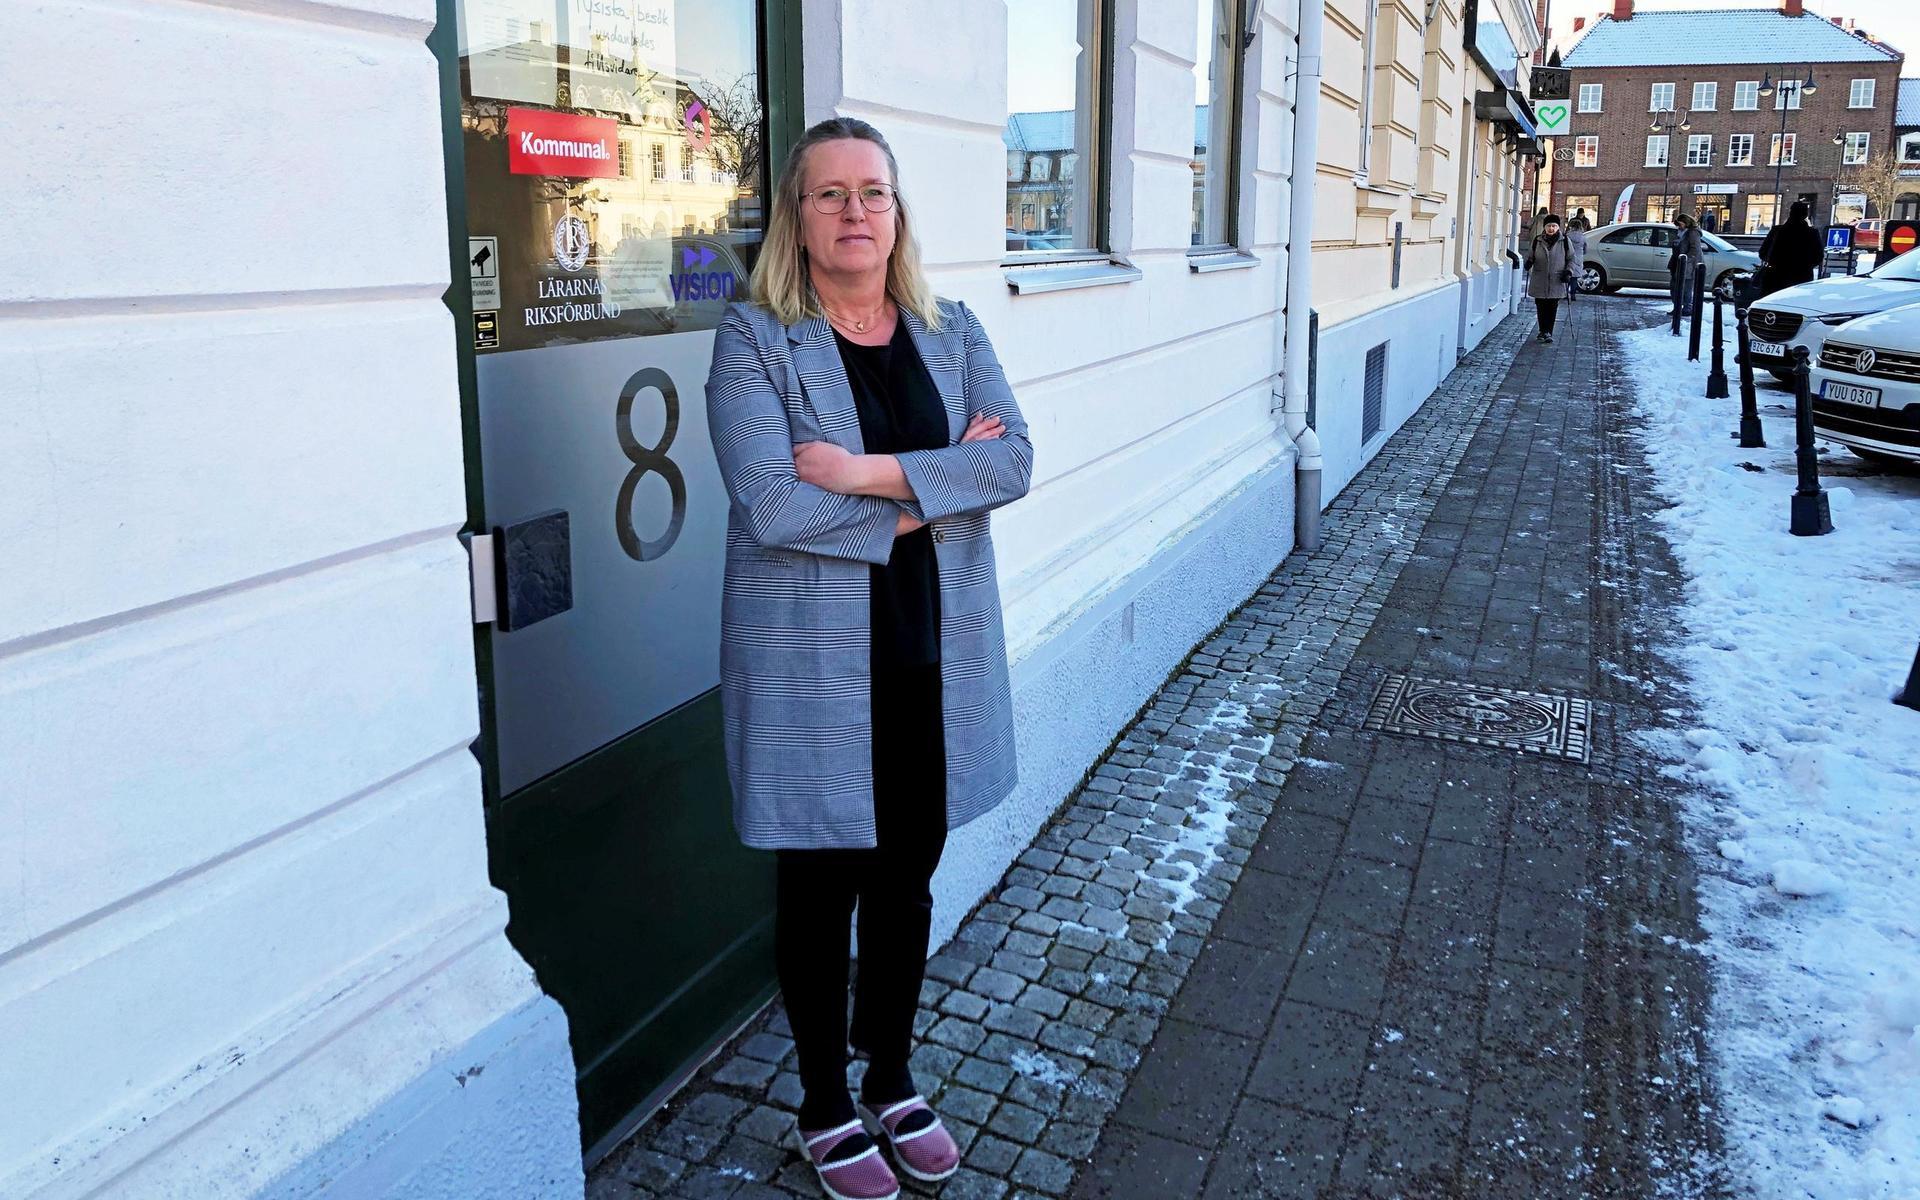 ”Hur kan de ha ett bra samvete när de gått före innan alla våra medlemmar som jobbar på golvet har fått vaccinet?” frågar sig Jeanette Örenmark, ordförande i Kommunal sektion Laholm.